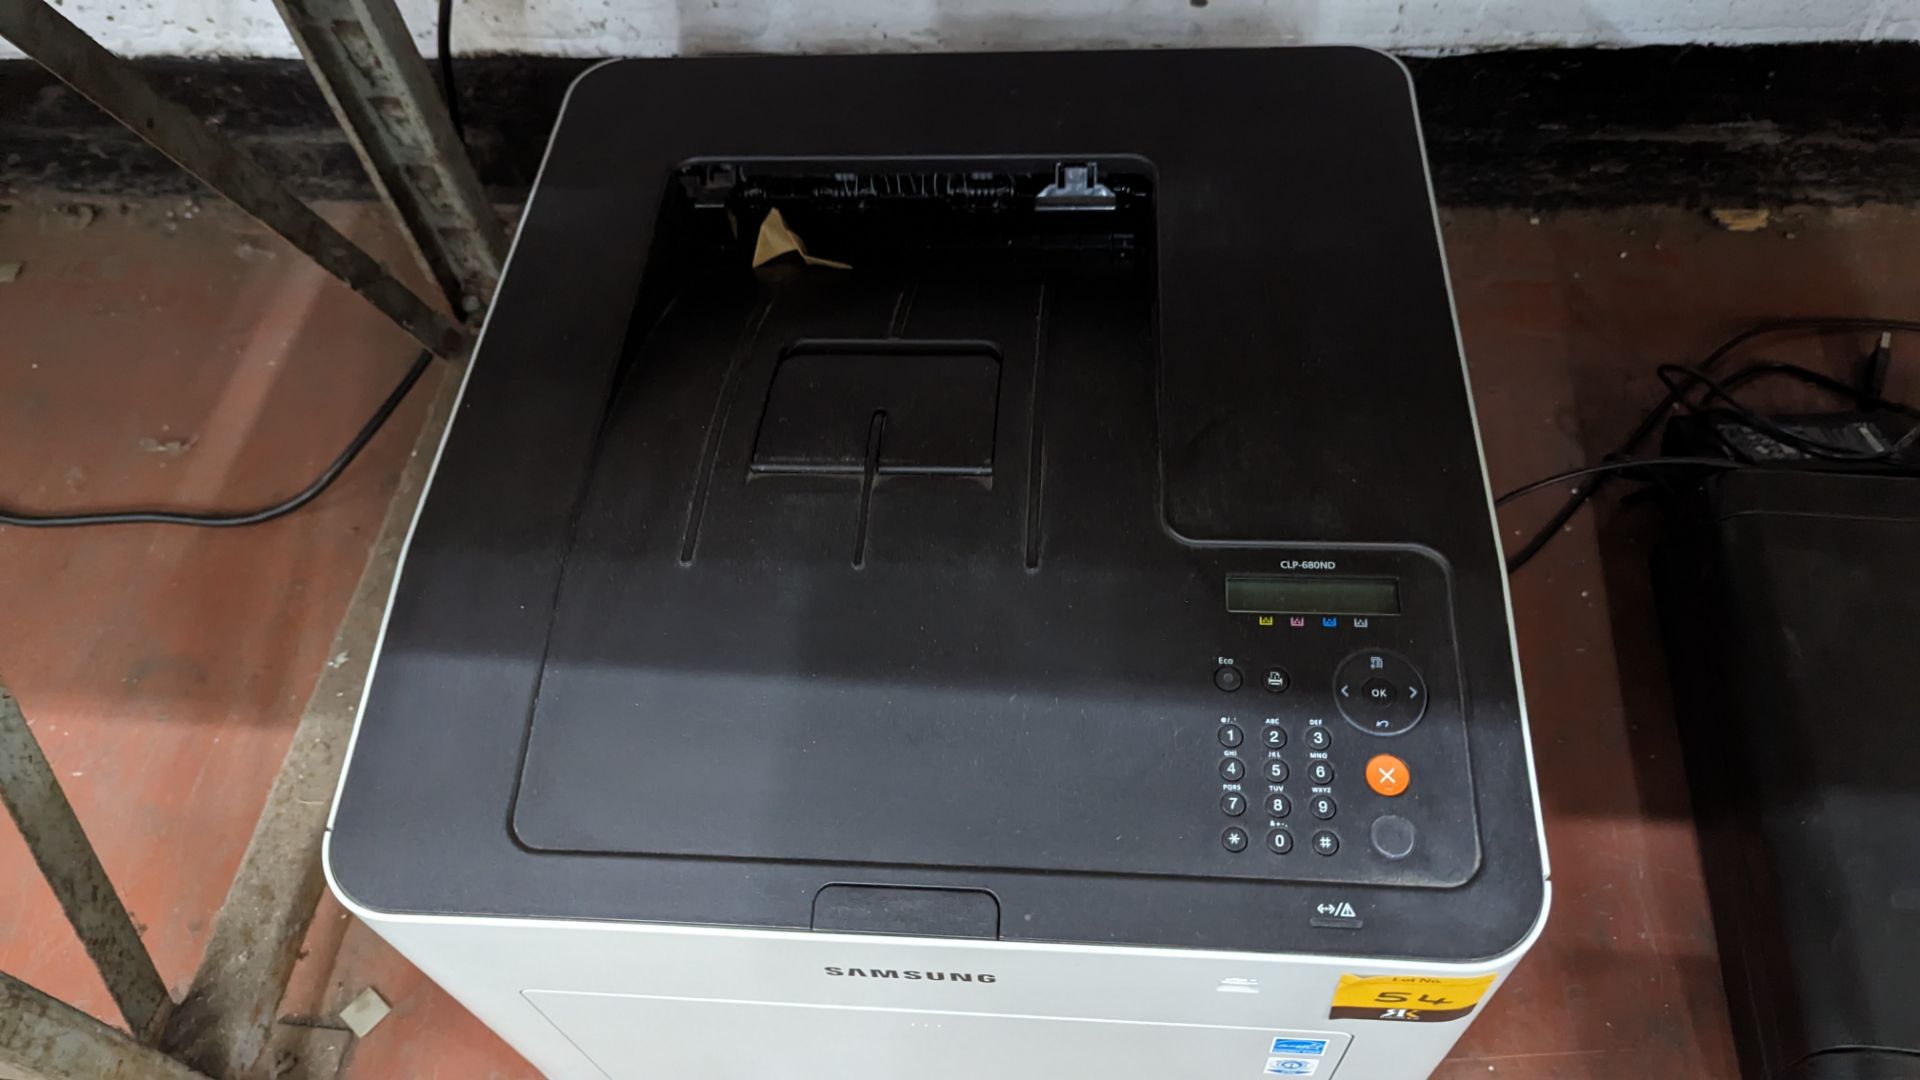 Samsung colour laser printer model CLP-680ND - Image 4 of 5